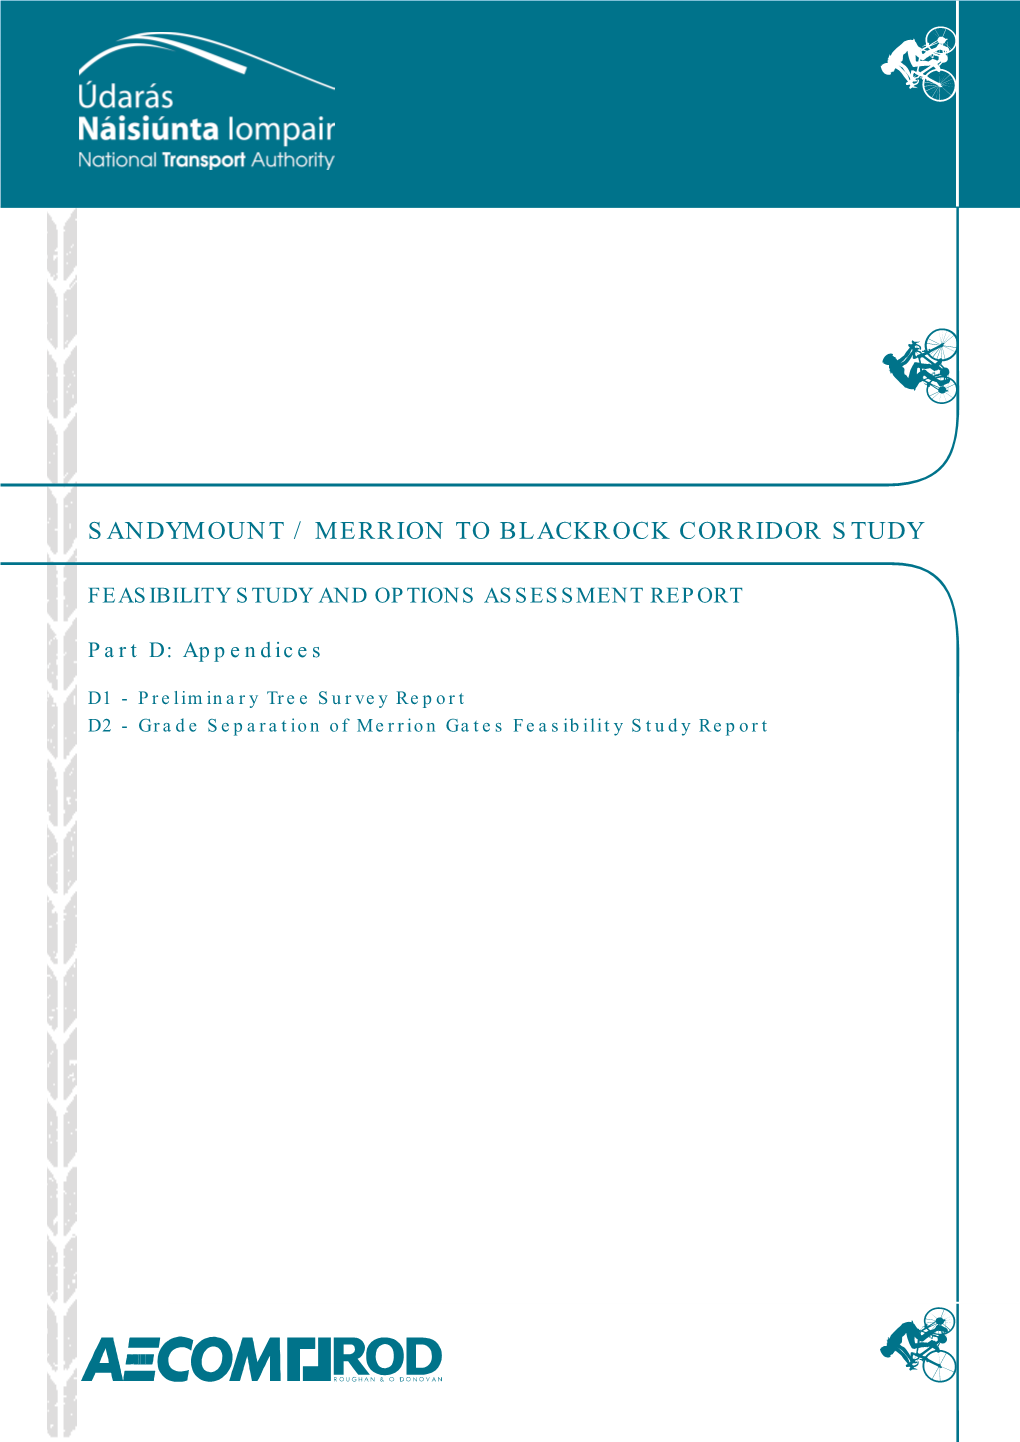 Sandymount / Merrion to Blackrock Corridor Study